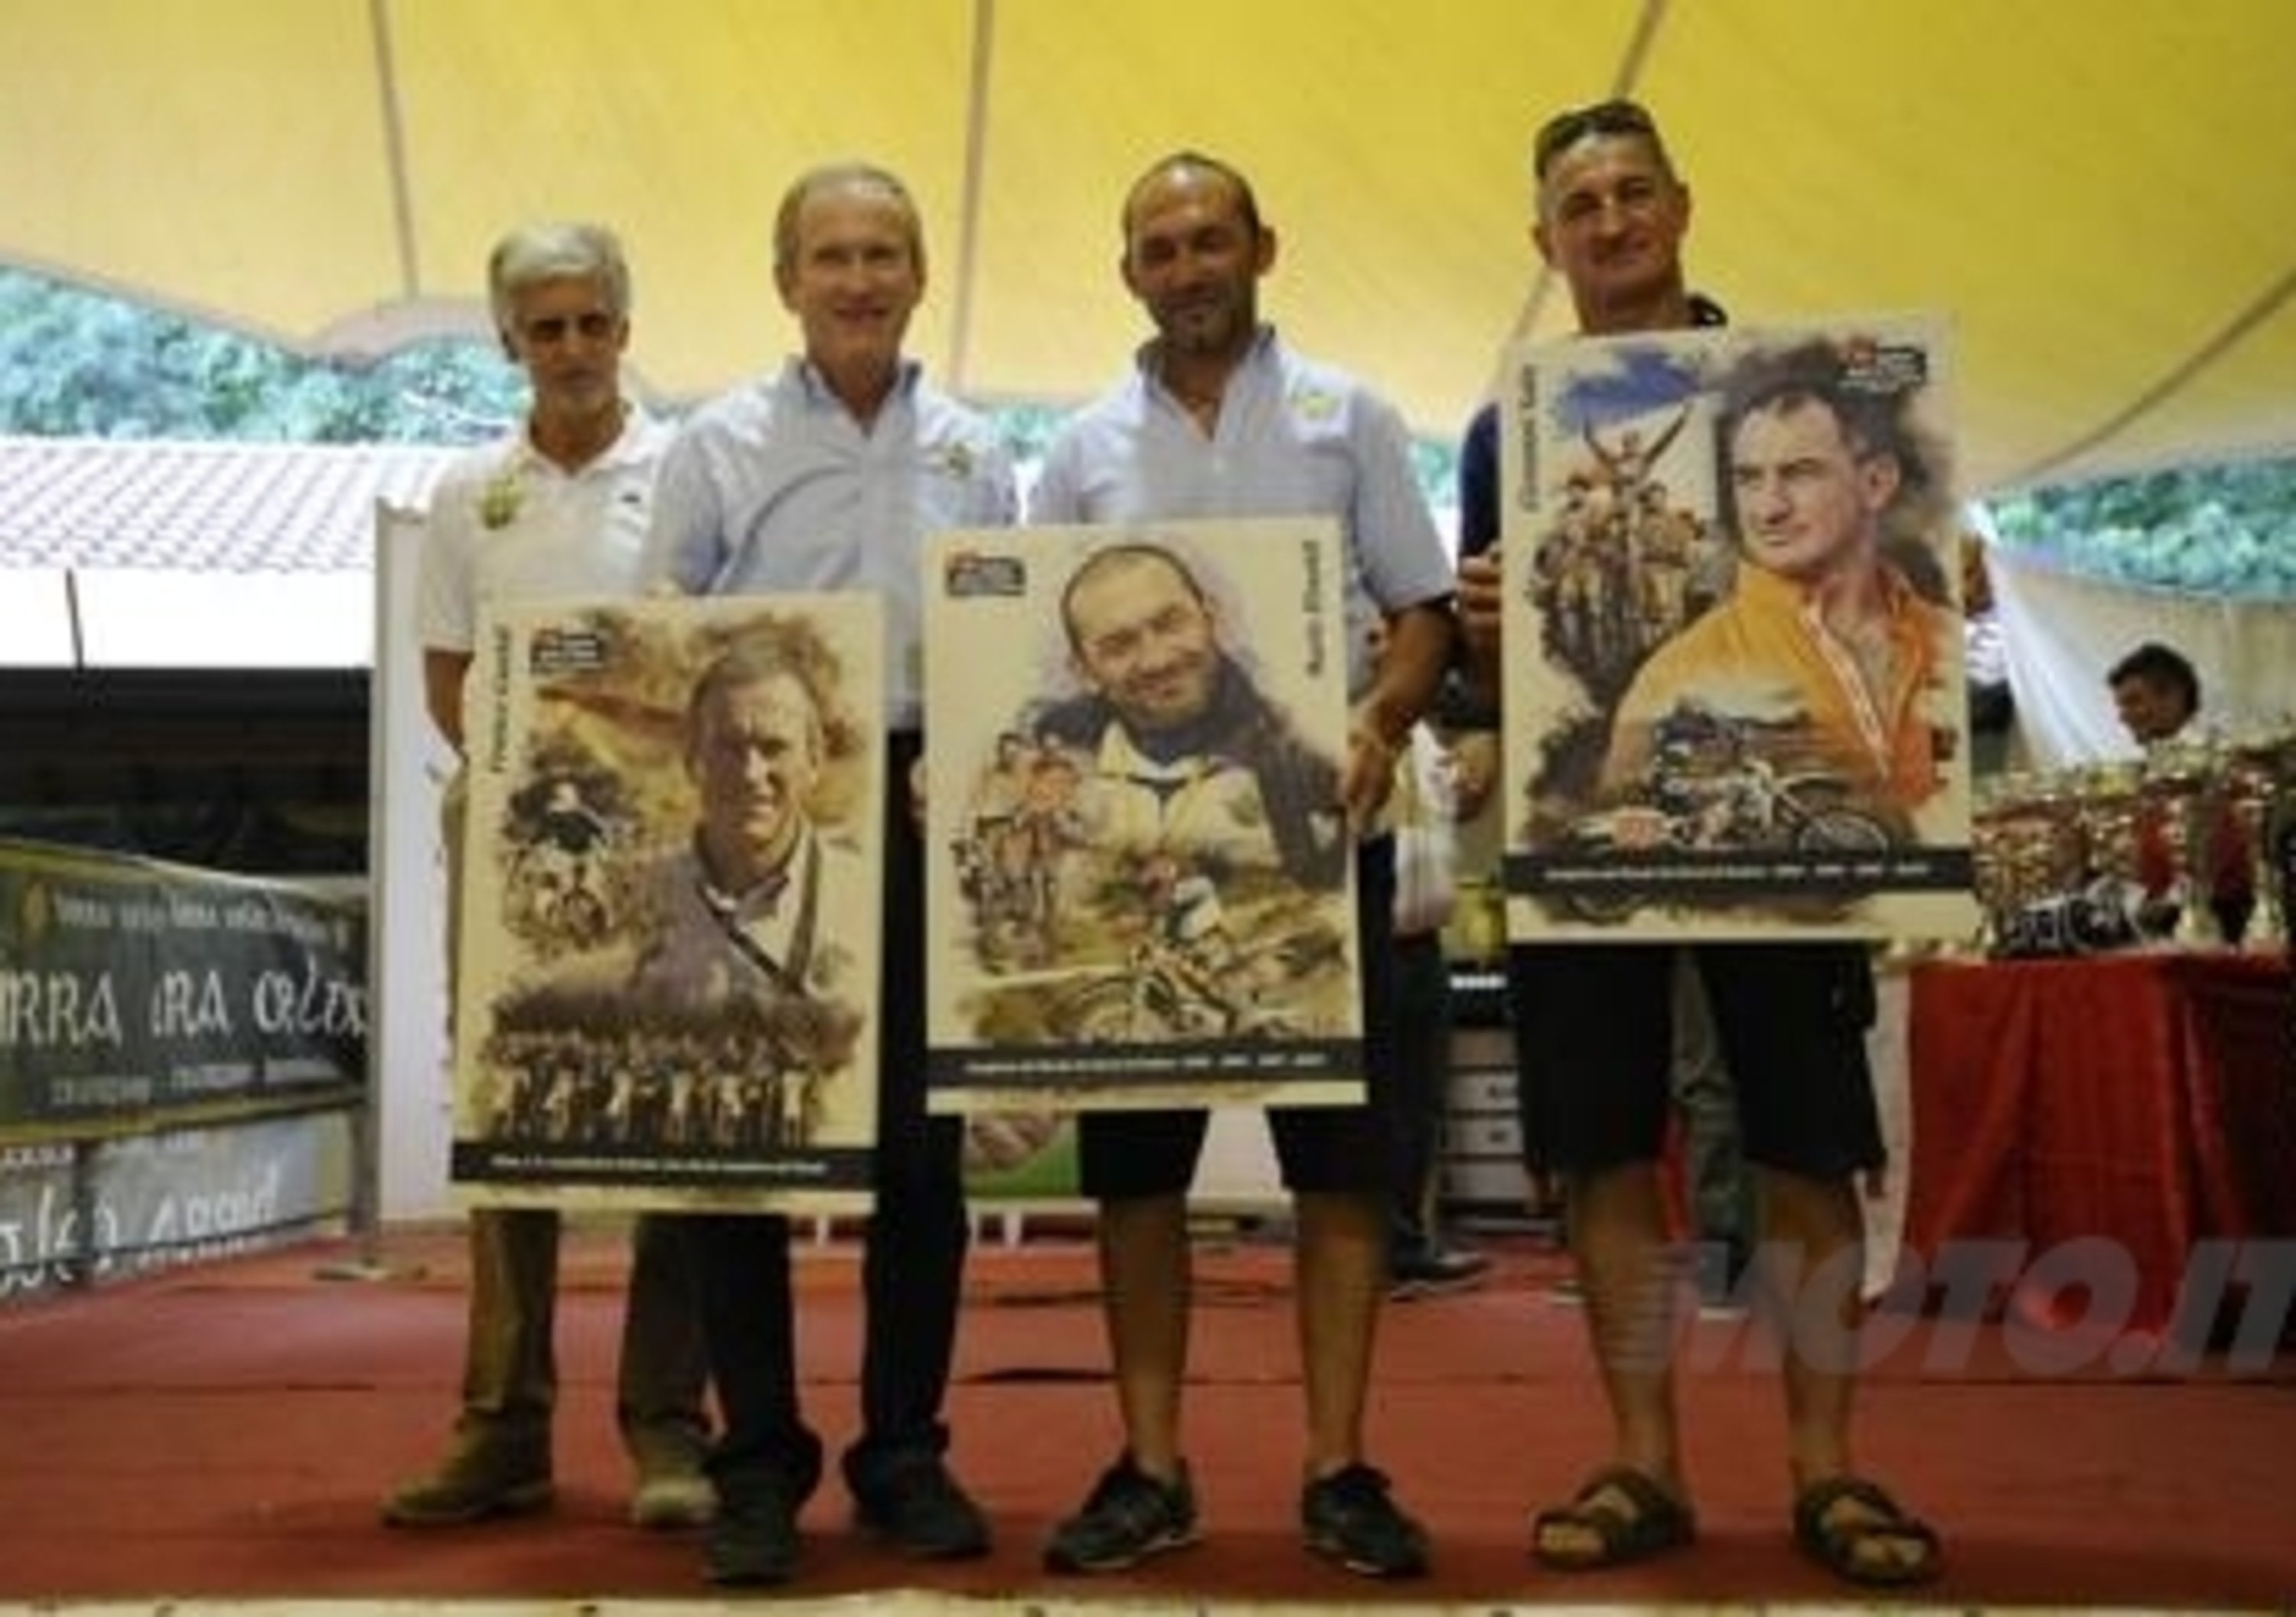 Franco Gualdi, Mario Rinaldi e Gio&#039; Sala: Italian Hall of Fame dell&#039;Enduro